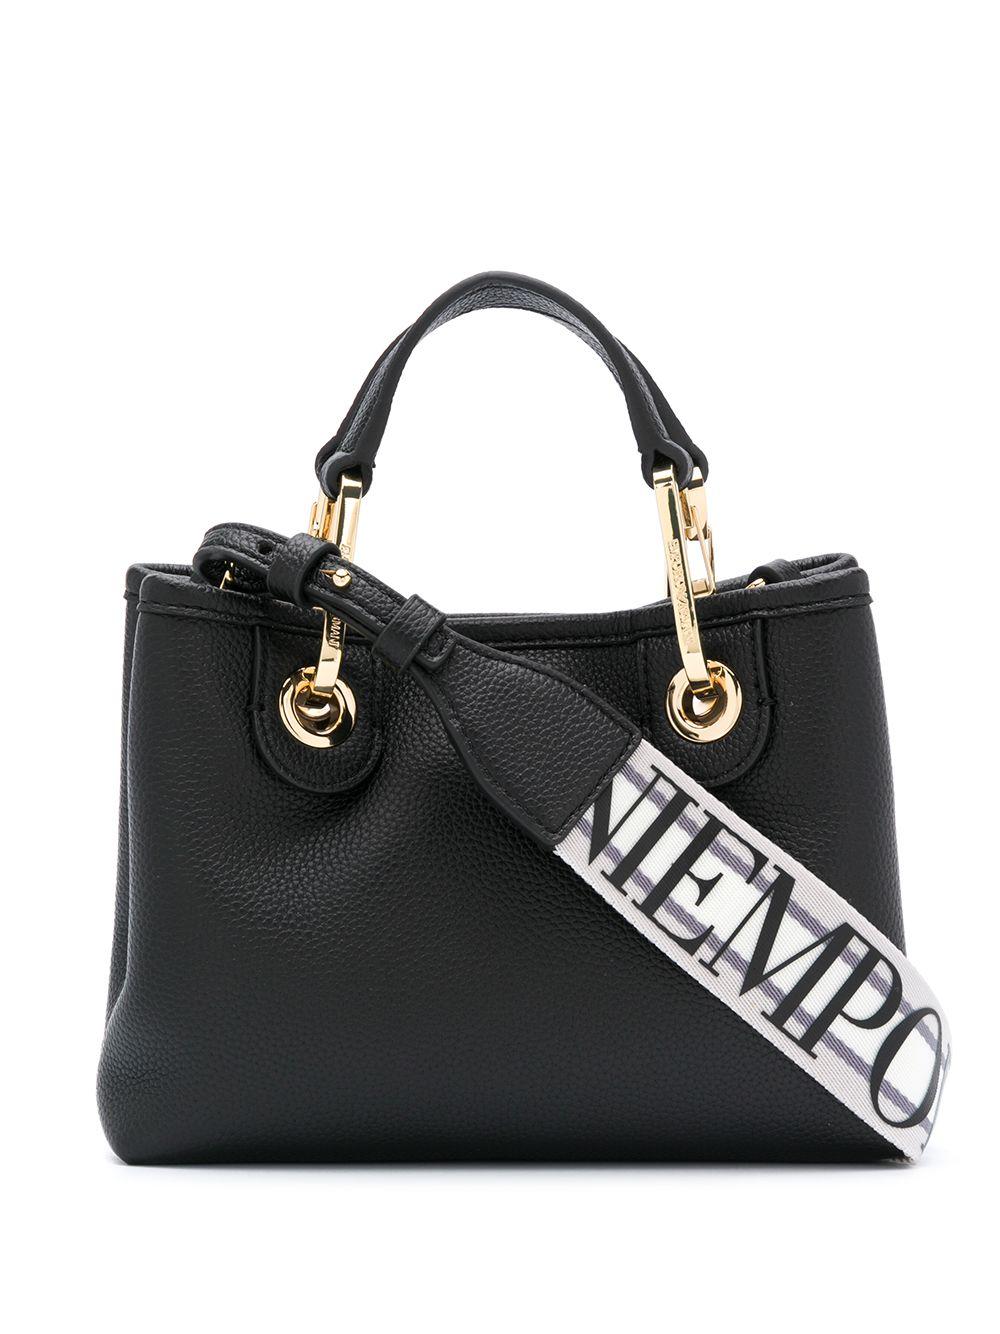 Emporio Armani Logo Strap Tote Bag in Black | Lyst